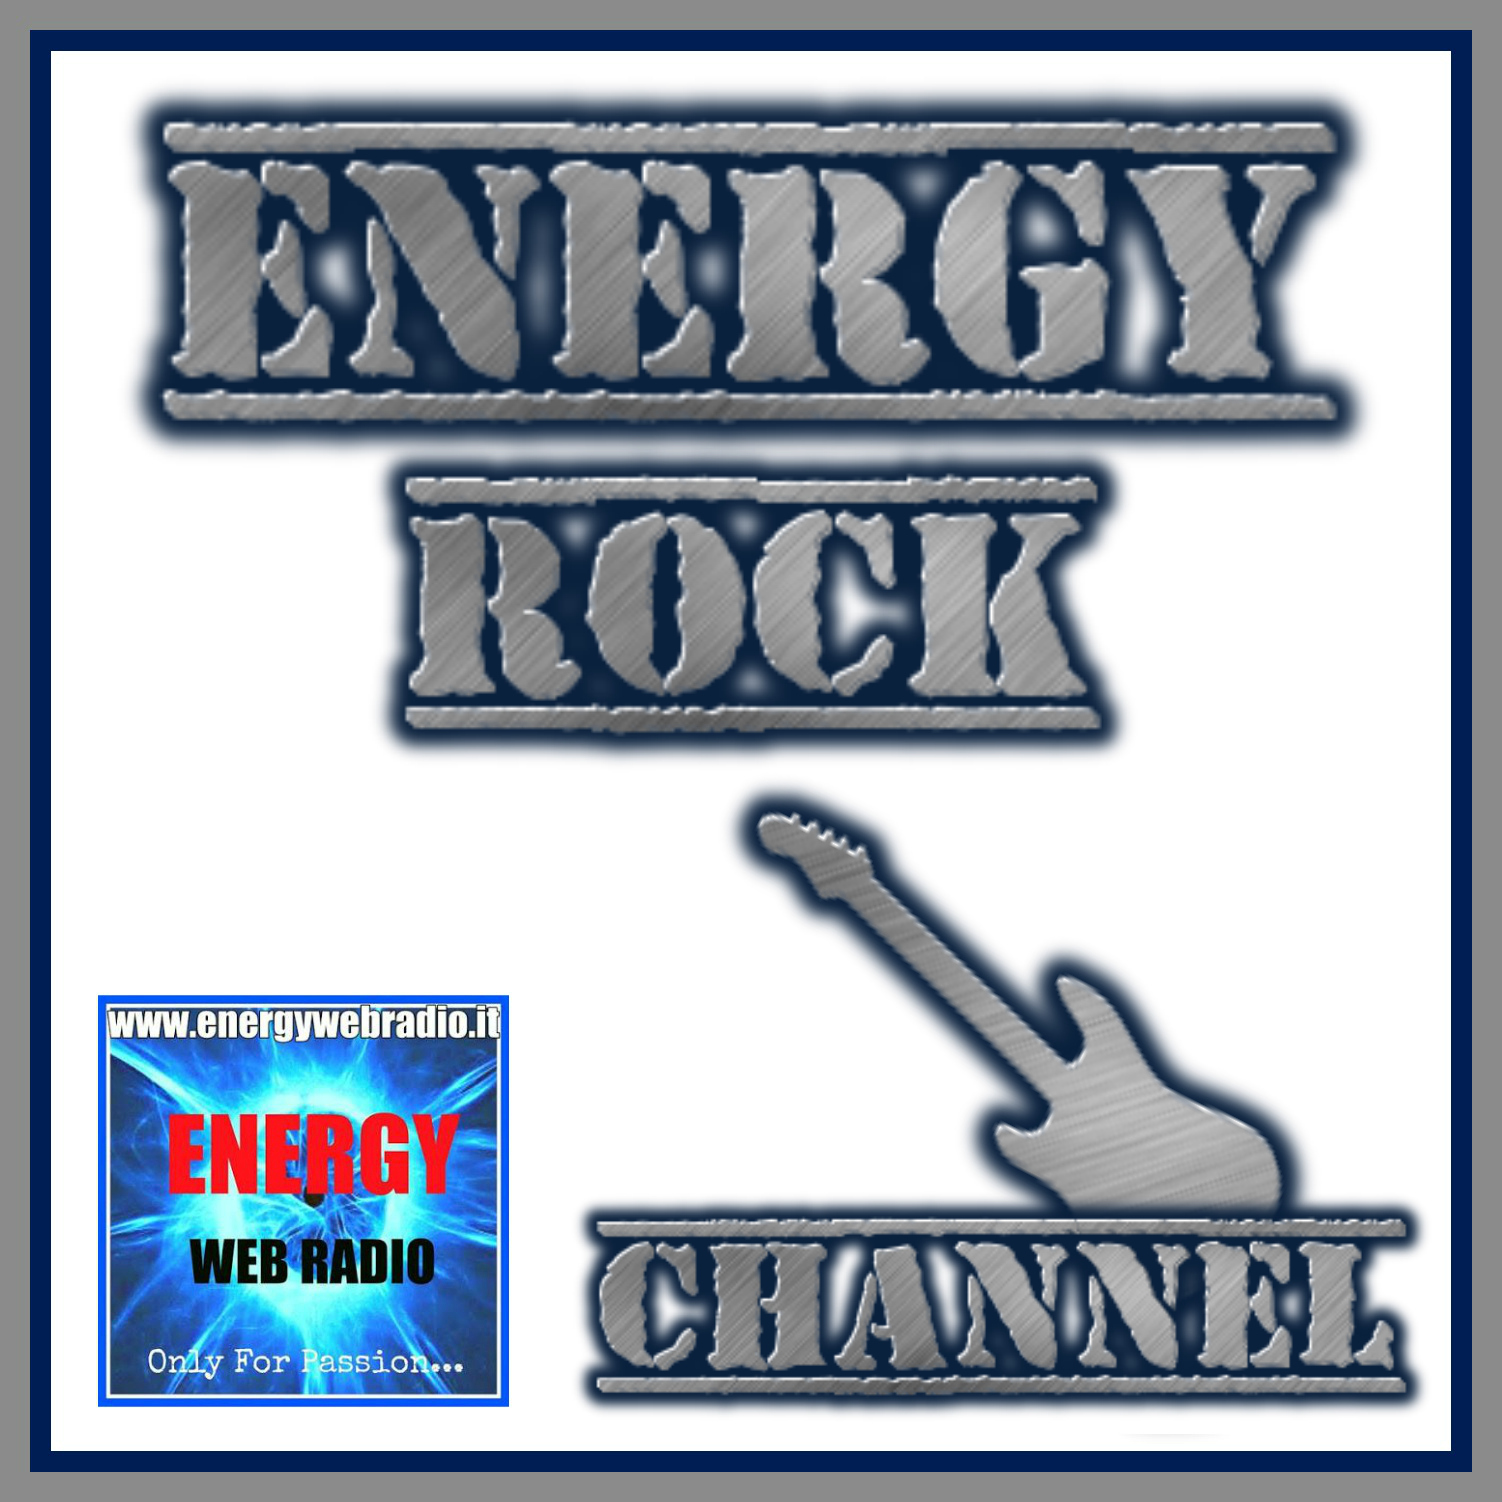 Rock Channel Energy web radio